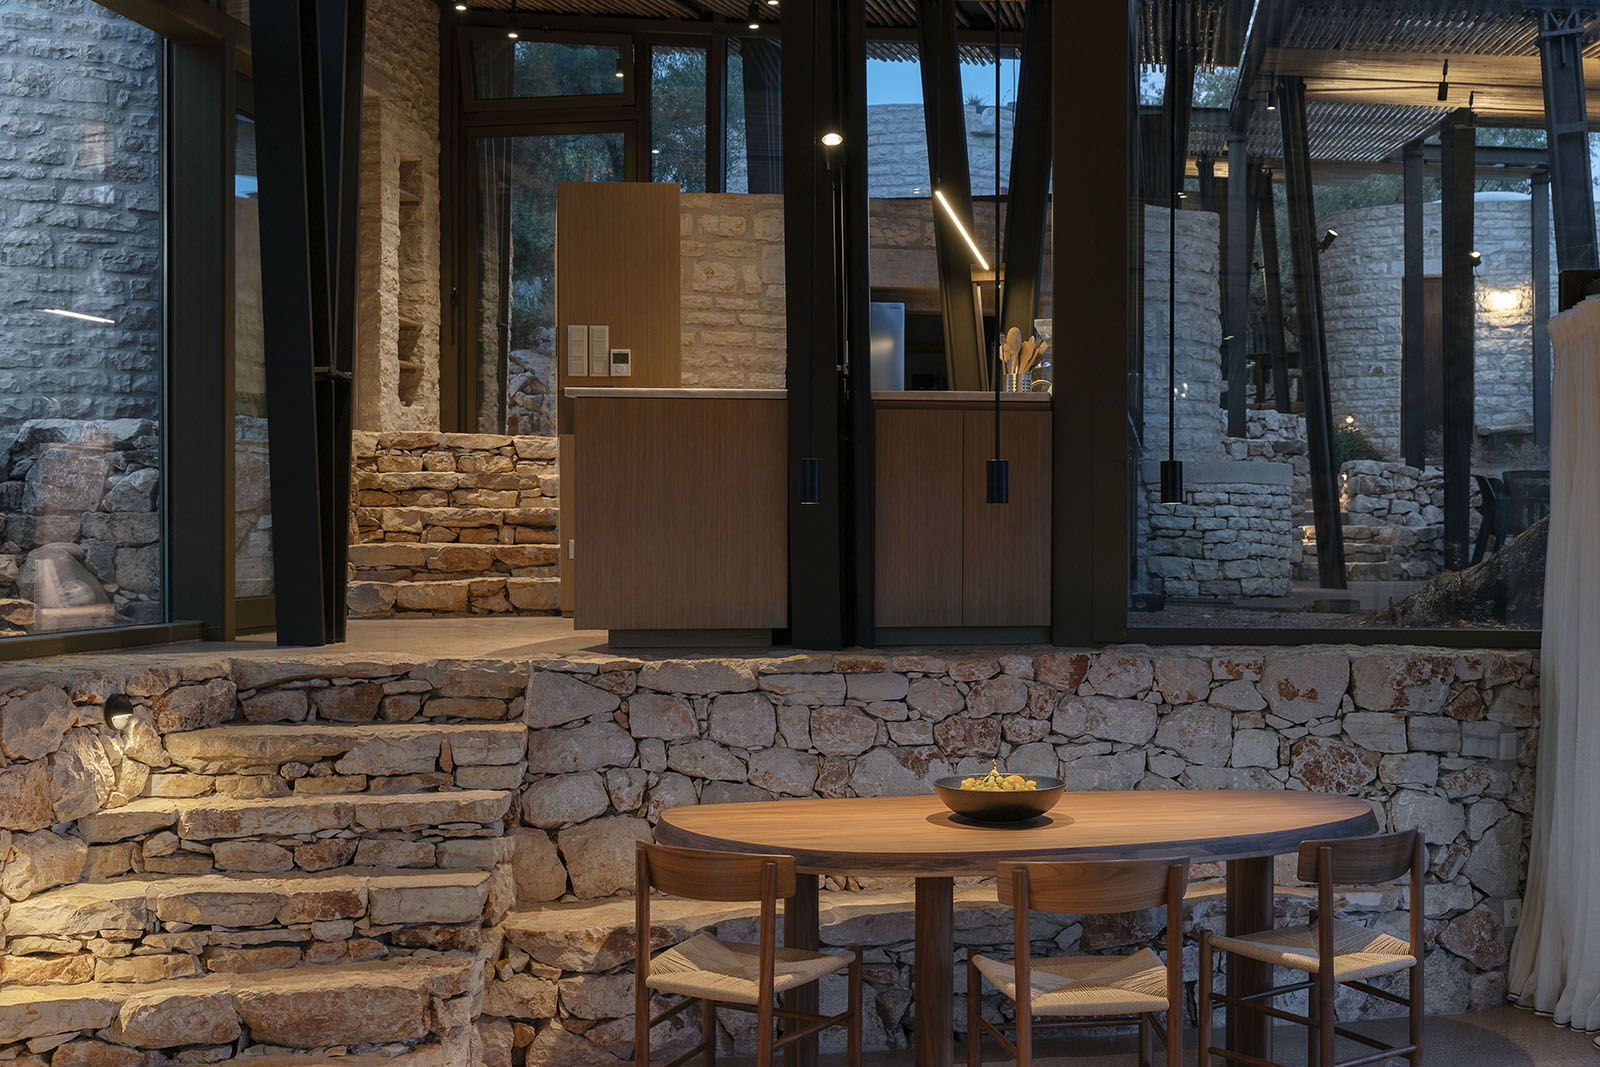 Archisearch Το έργο 'Κατοικίες' στο Μεγανήσι από το γραφείο Hiboux Architecture απέσπασε ΔΙΑΚΡΙΣΗ στο διαγωνισμό για το Βραβείο Αρχιτεκτονικής ΕΙΑ 2022